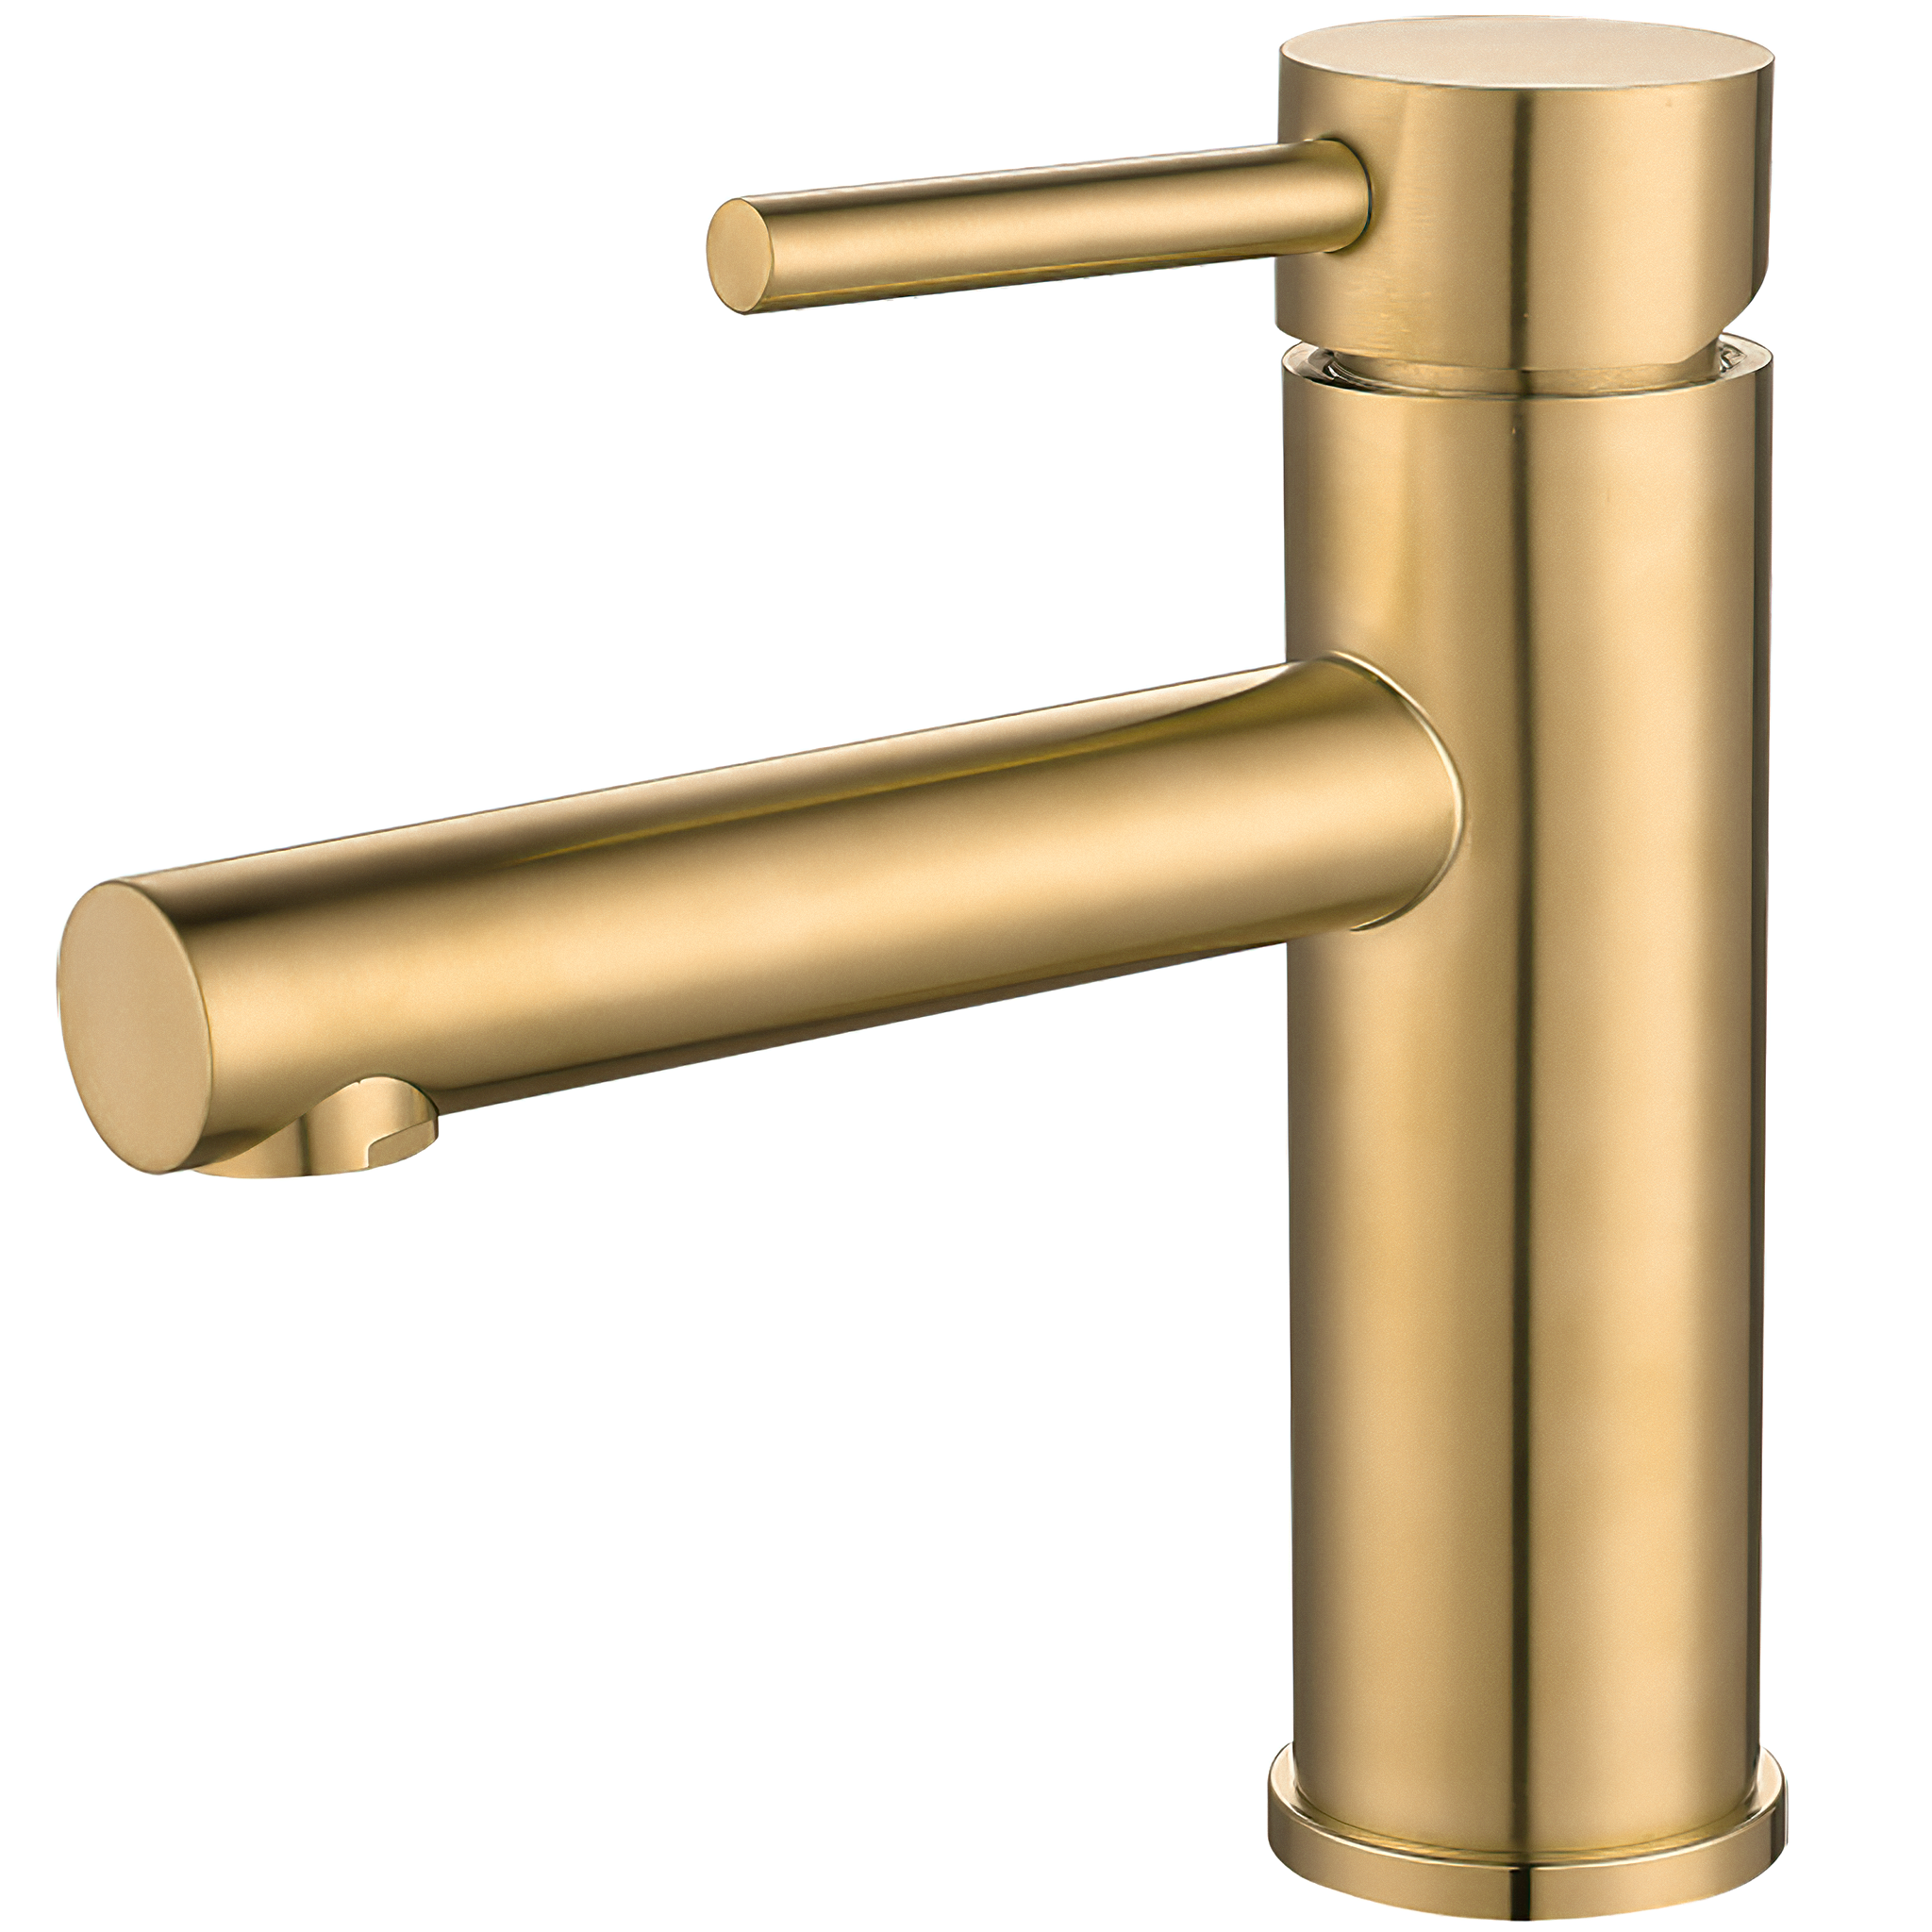 Grifo de lavabo empotrado ovalado con embellecedor cuadrado dorado  cepillado serie sil – VALAZ – Fabricación y comercialización de grifería